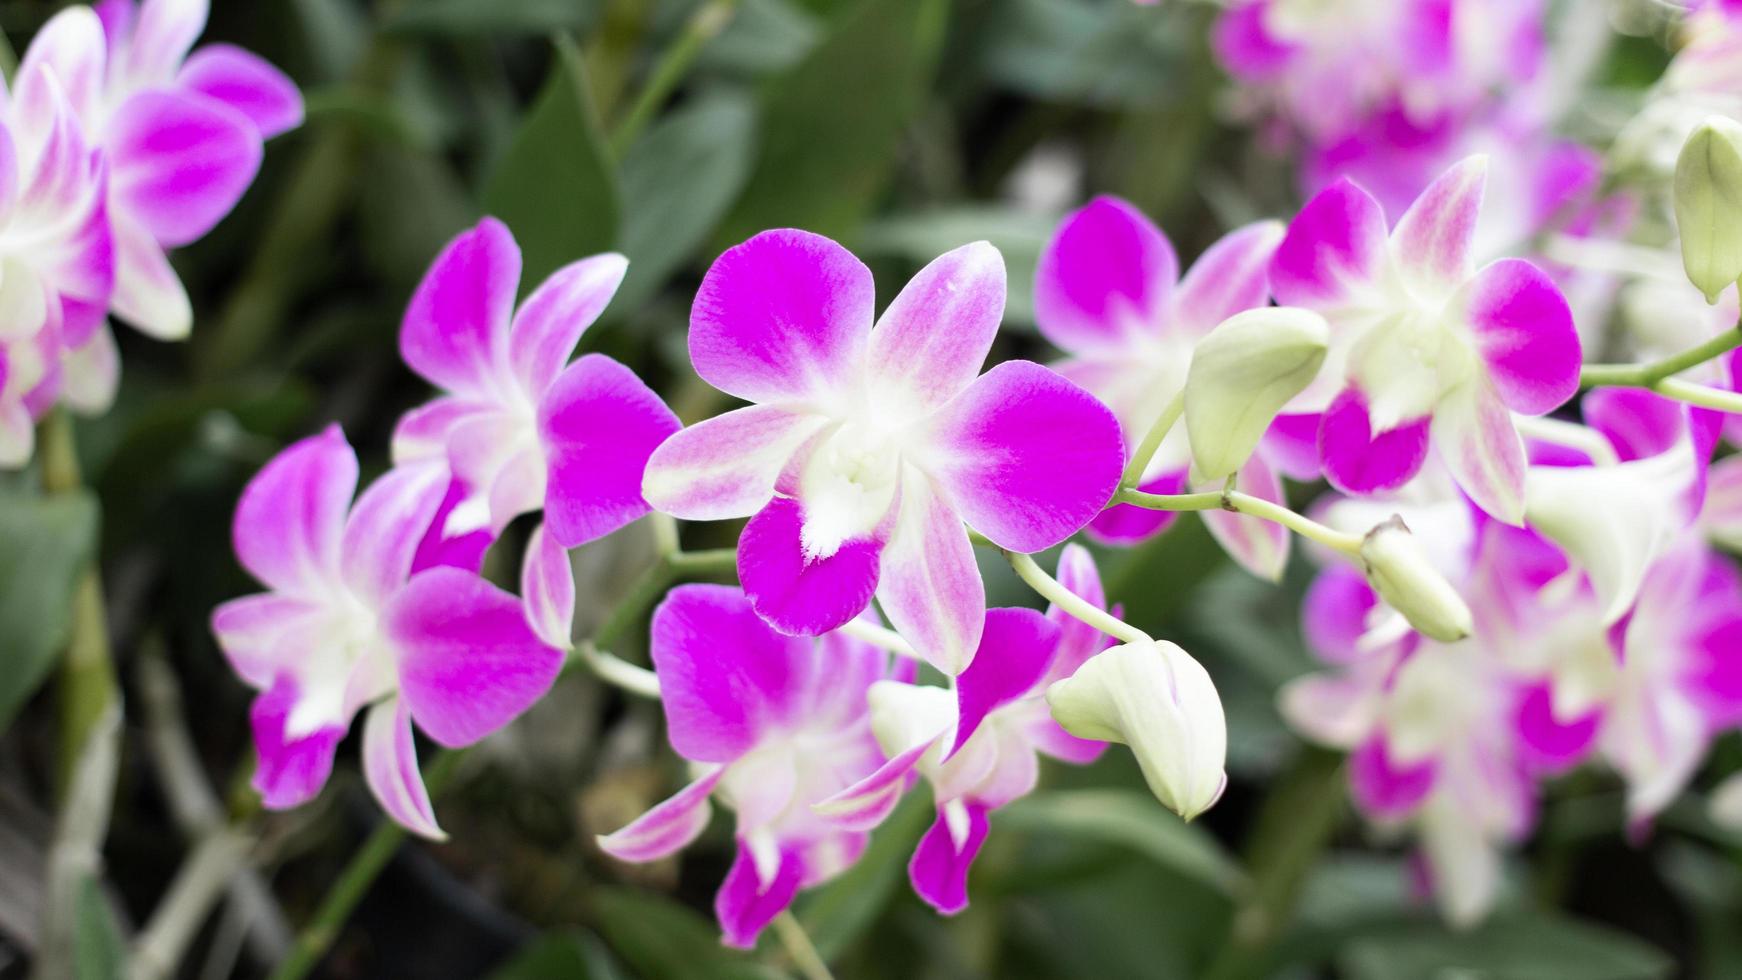 flor de orquídea roxa de primavera em um verde esquerdo blured background.orchid flor tirada em uma exposição na tailândia durante o dia time.selective focus.orchid flor na orquídea garden.dendrobium. foto